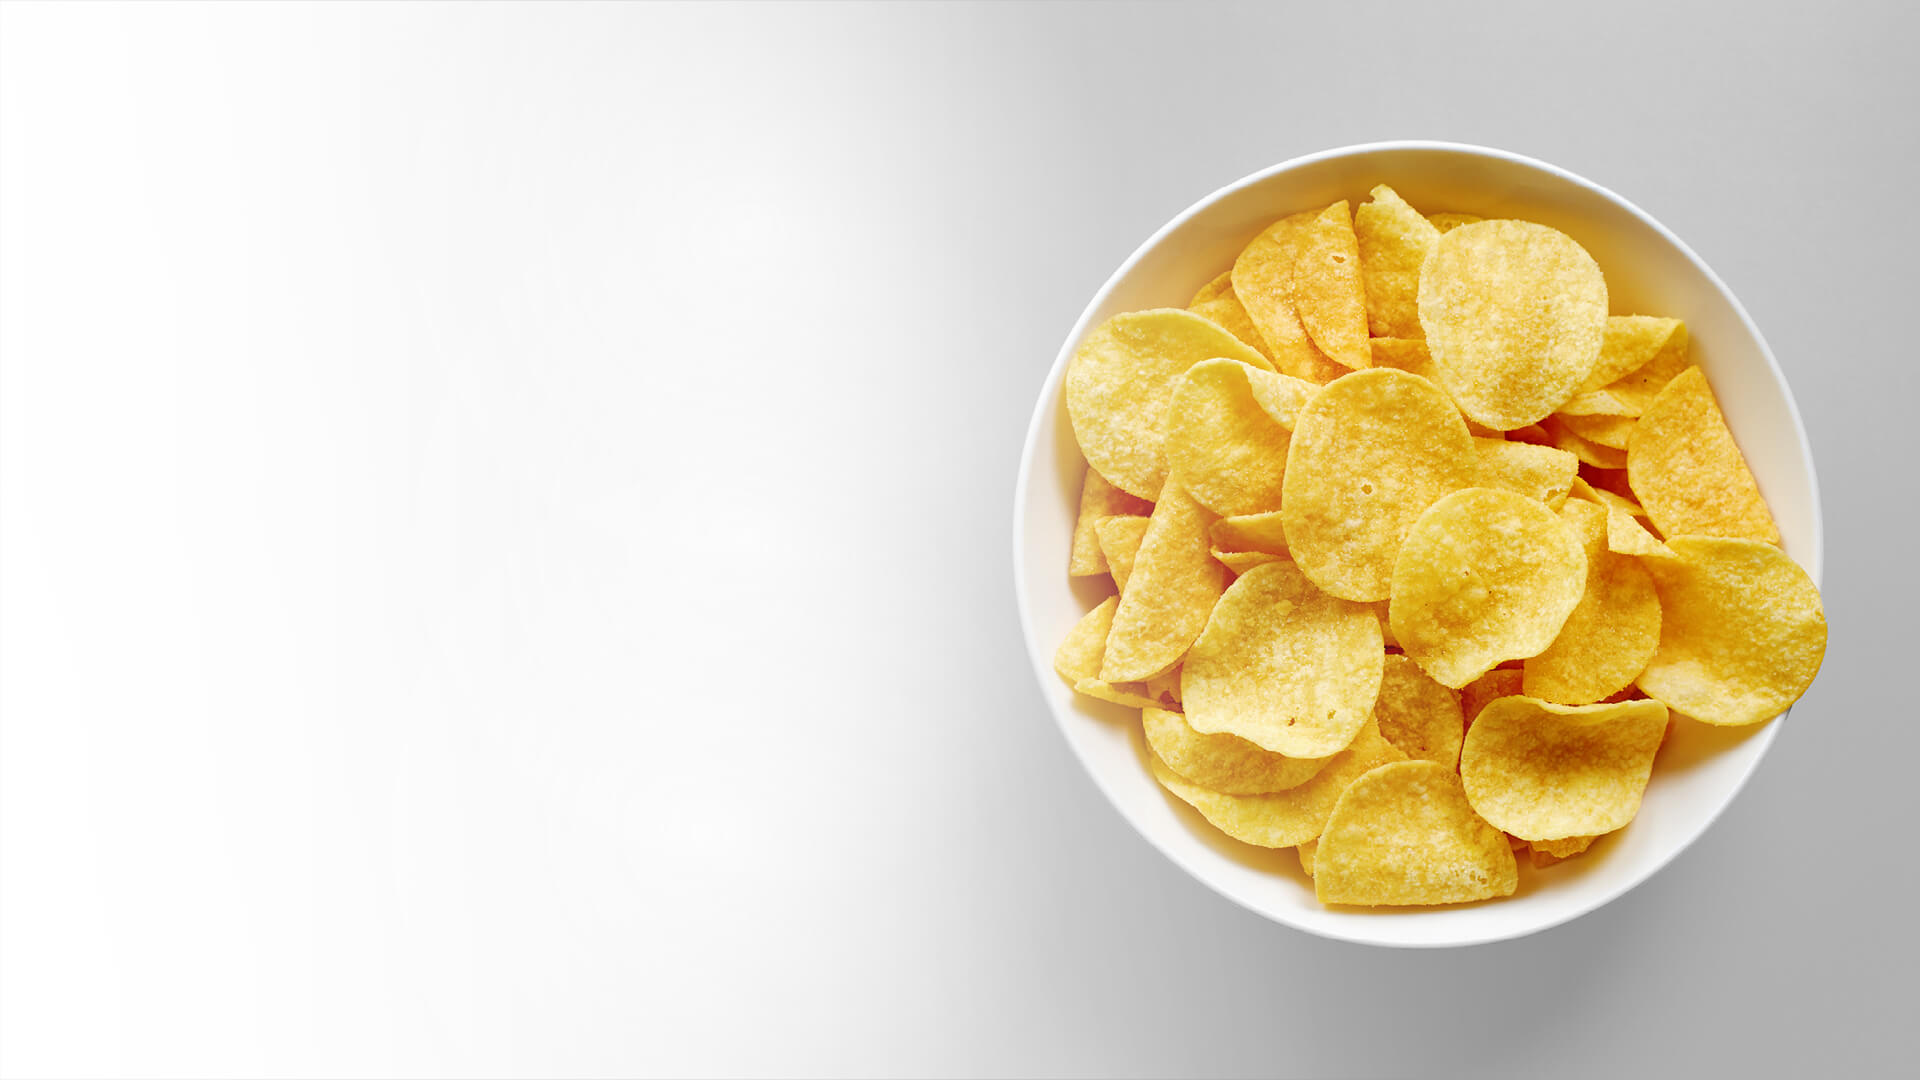 Potato chips, snacks in a bowl